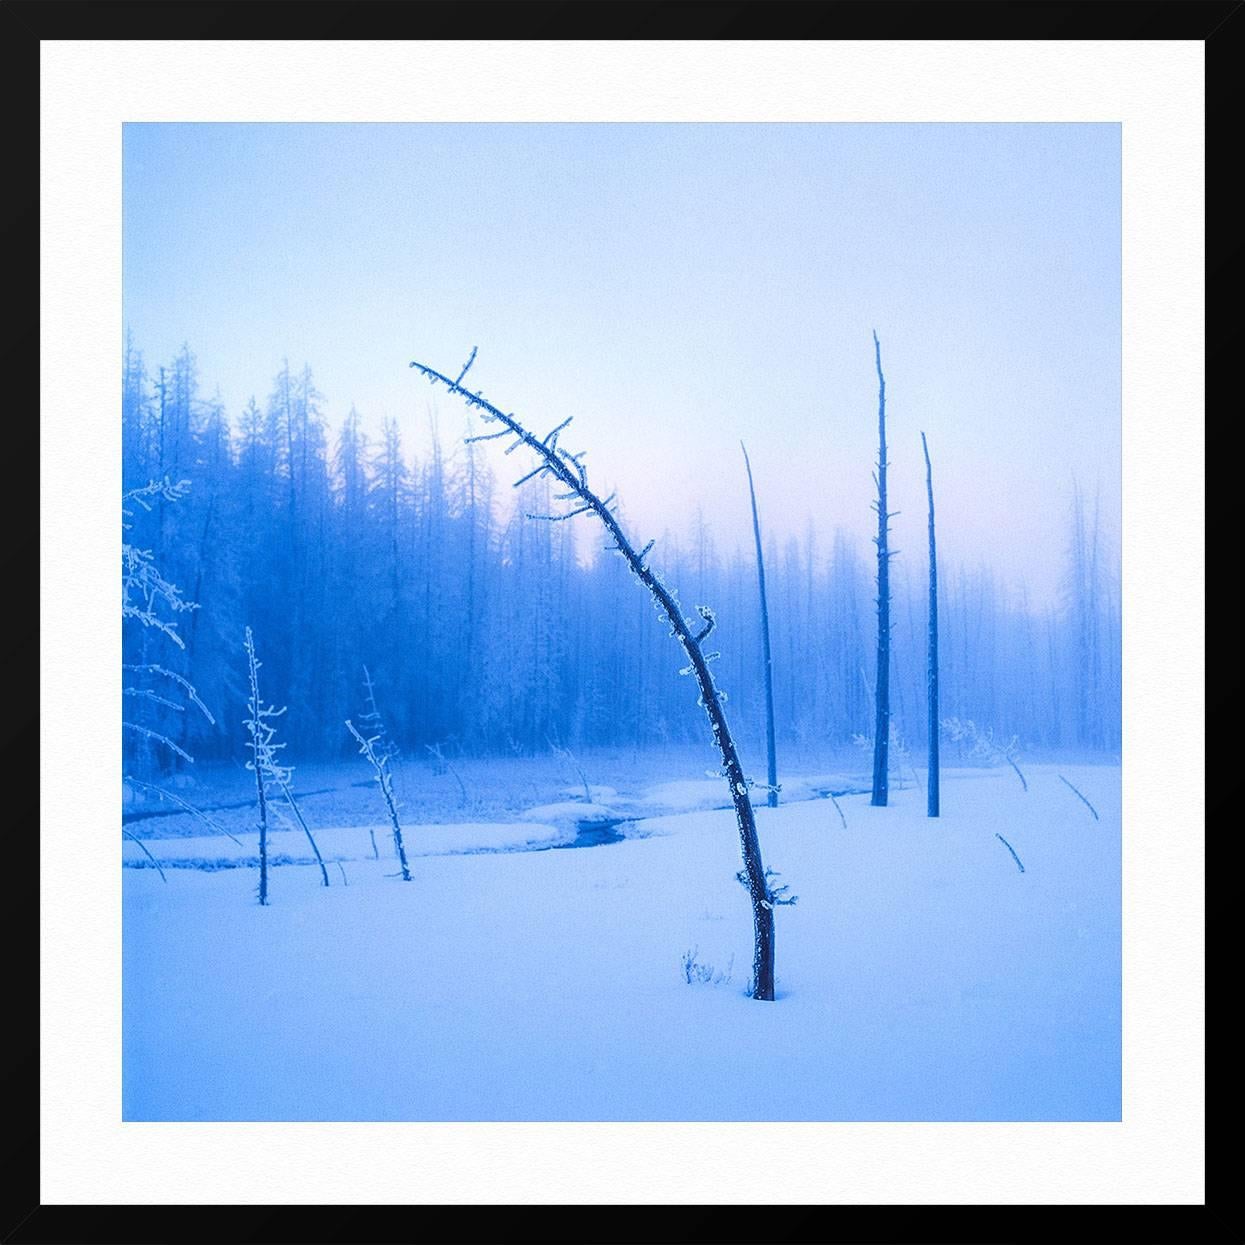 Frozen Tree on Twilight - Blue Landscape Print by Luca Marziale